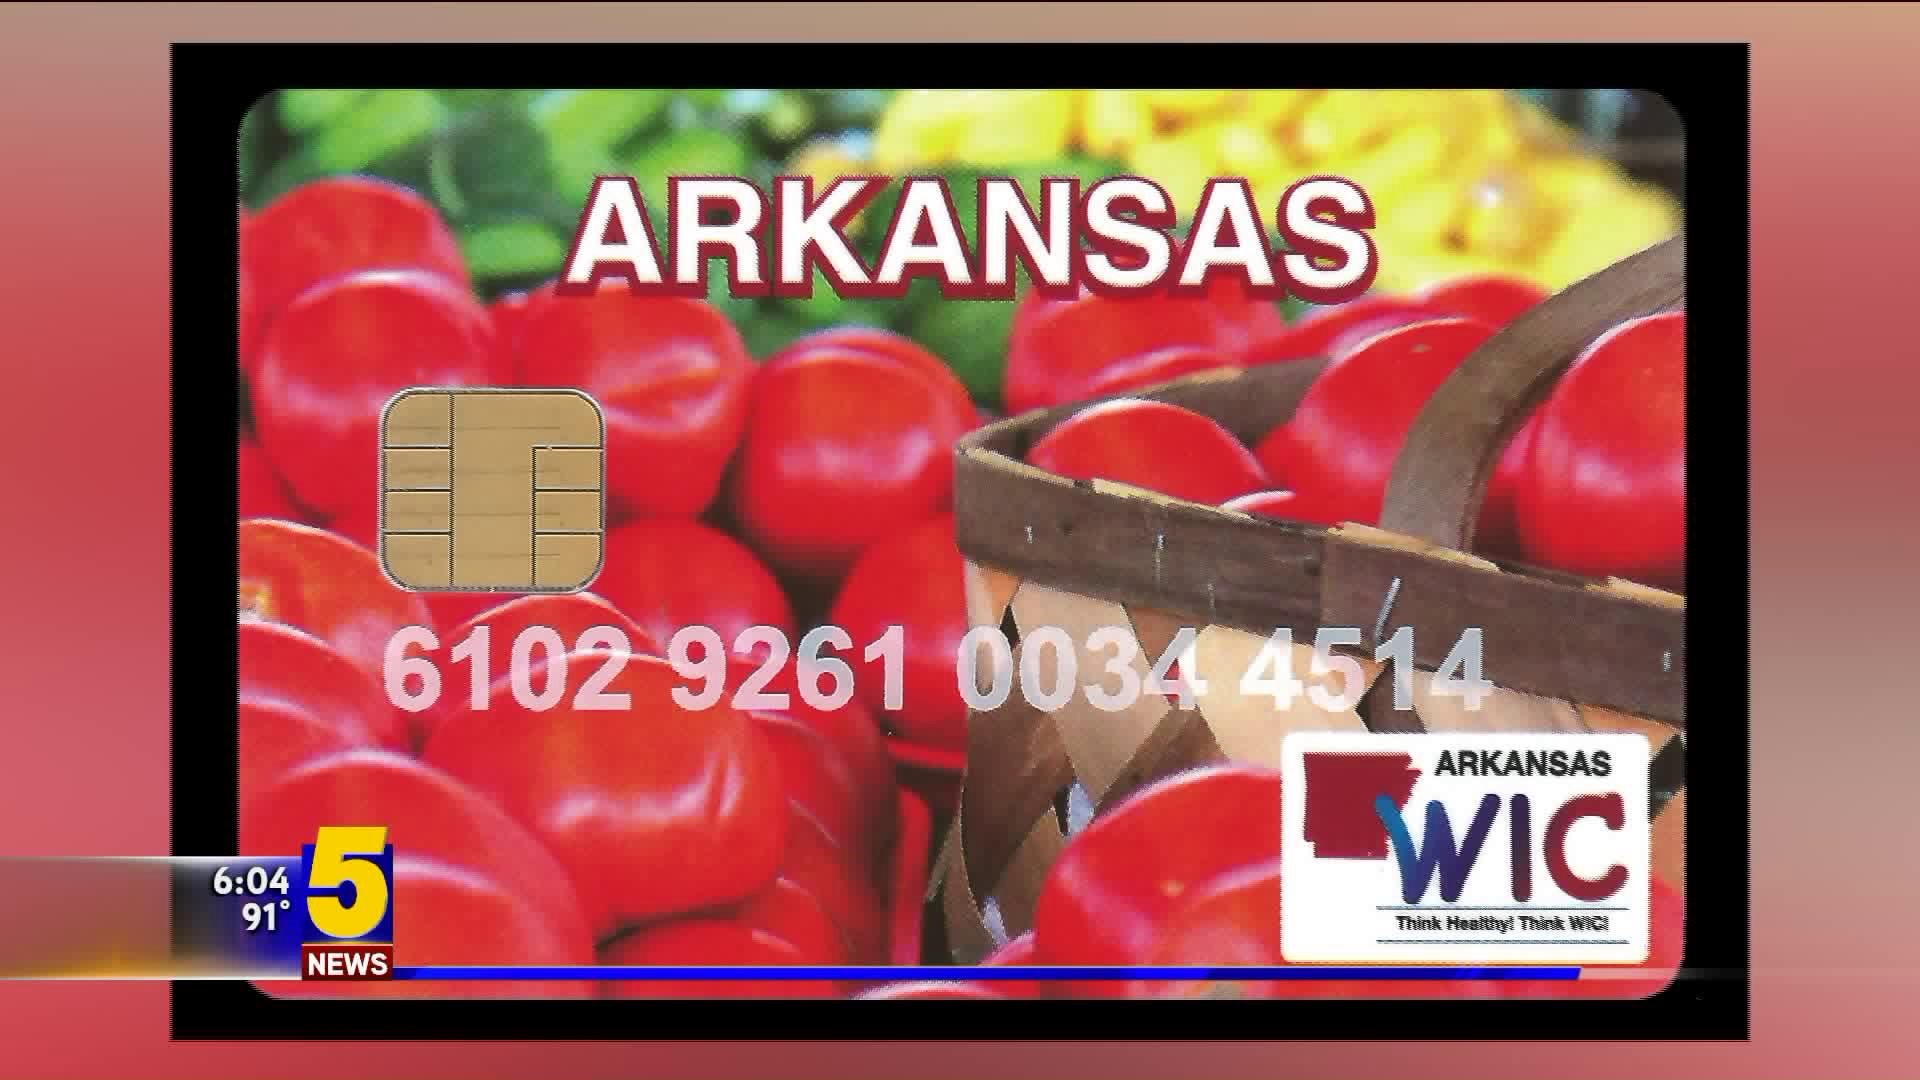 Arkansas’ WIC Program Rolls Out EBT Cards